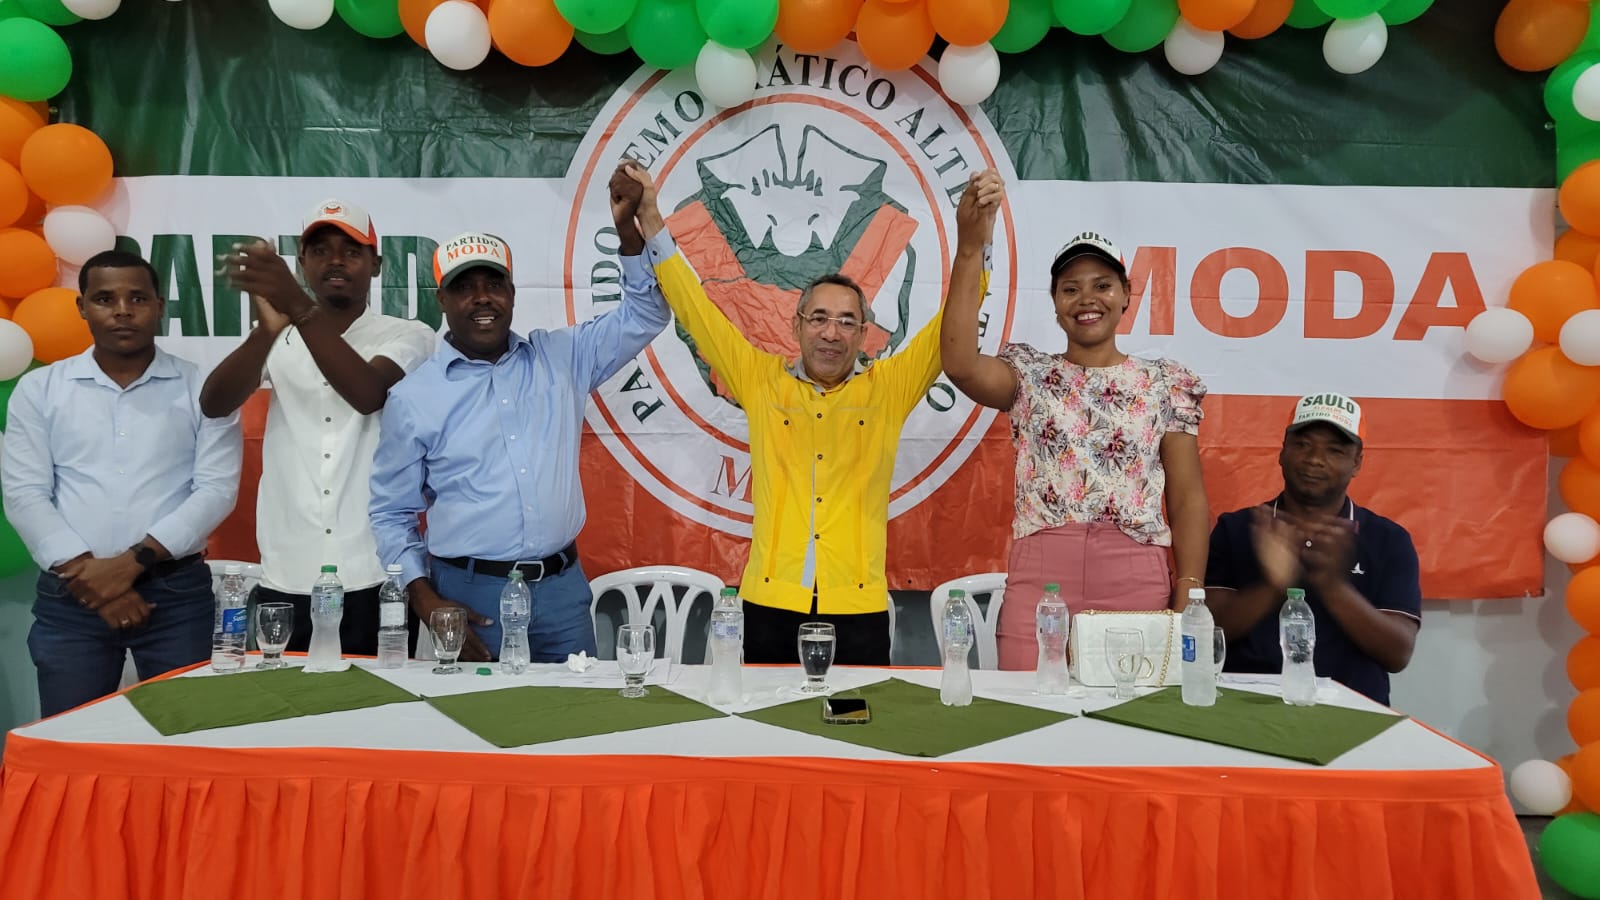 El Partido MODA juramenta vicealcaldesa del PLD en Vallejuelo y fortalecen candidatura a alcalde de Saulo Montero.